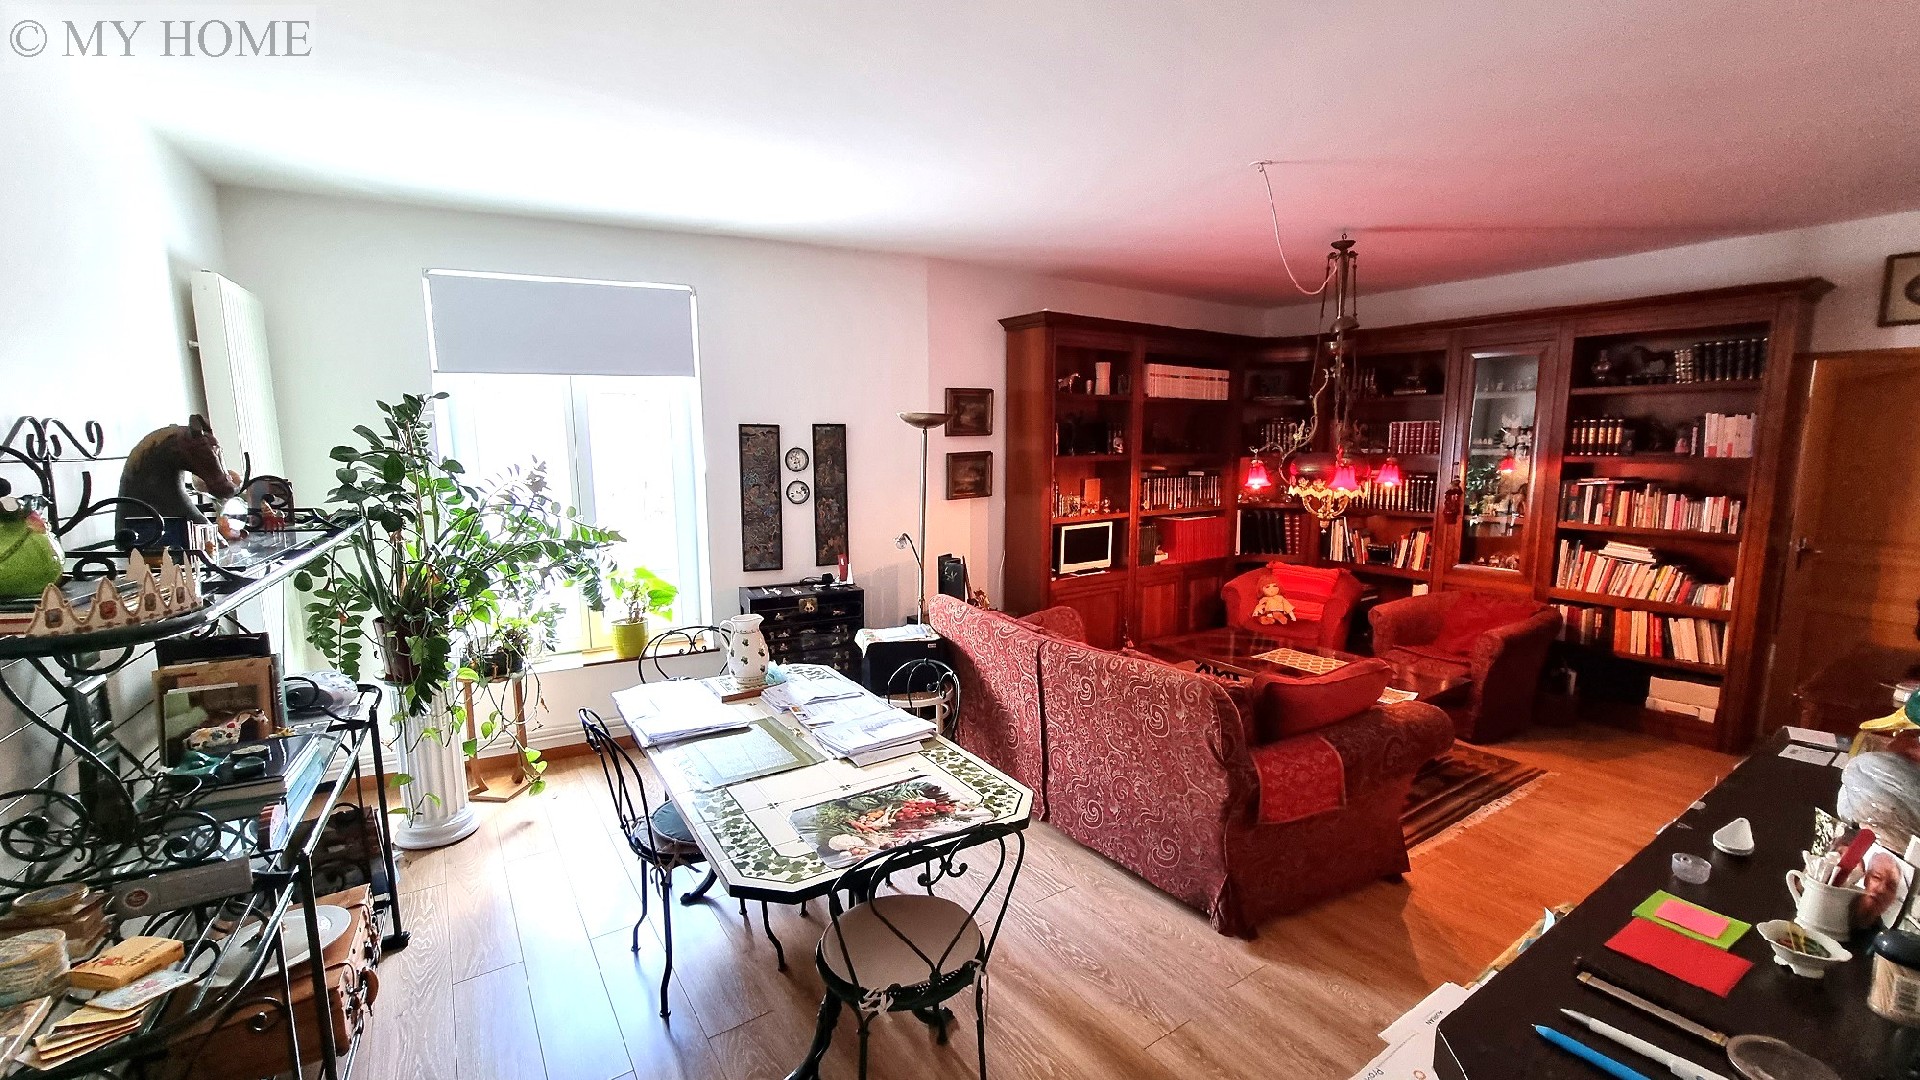 Vente appartement - TOUL 84,44 m², 4 pièces